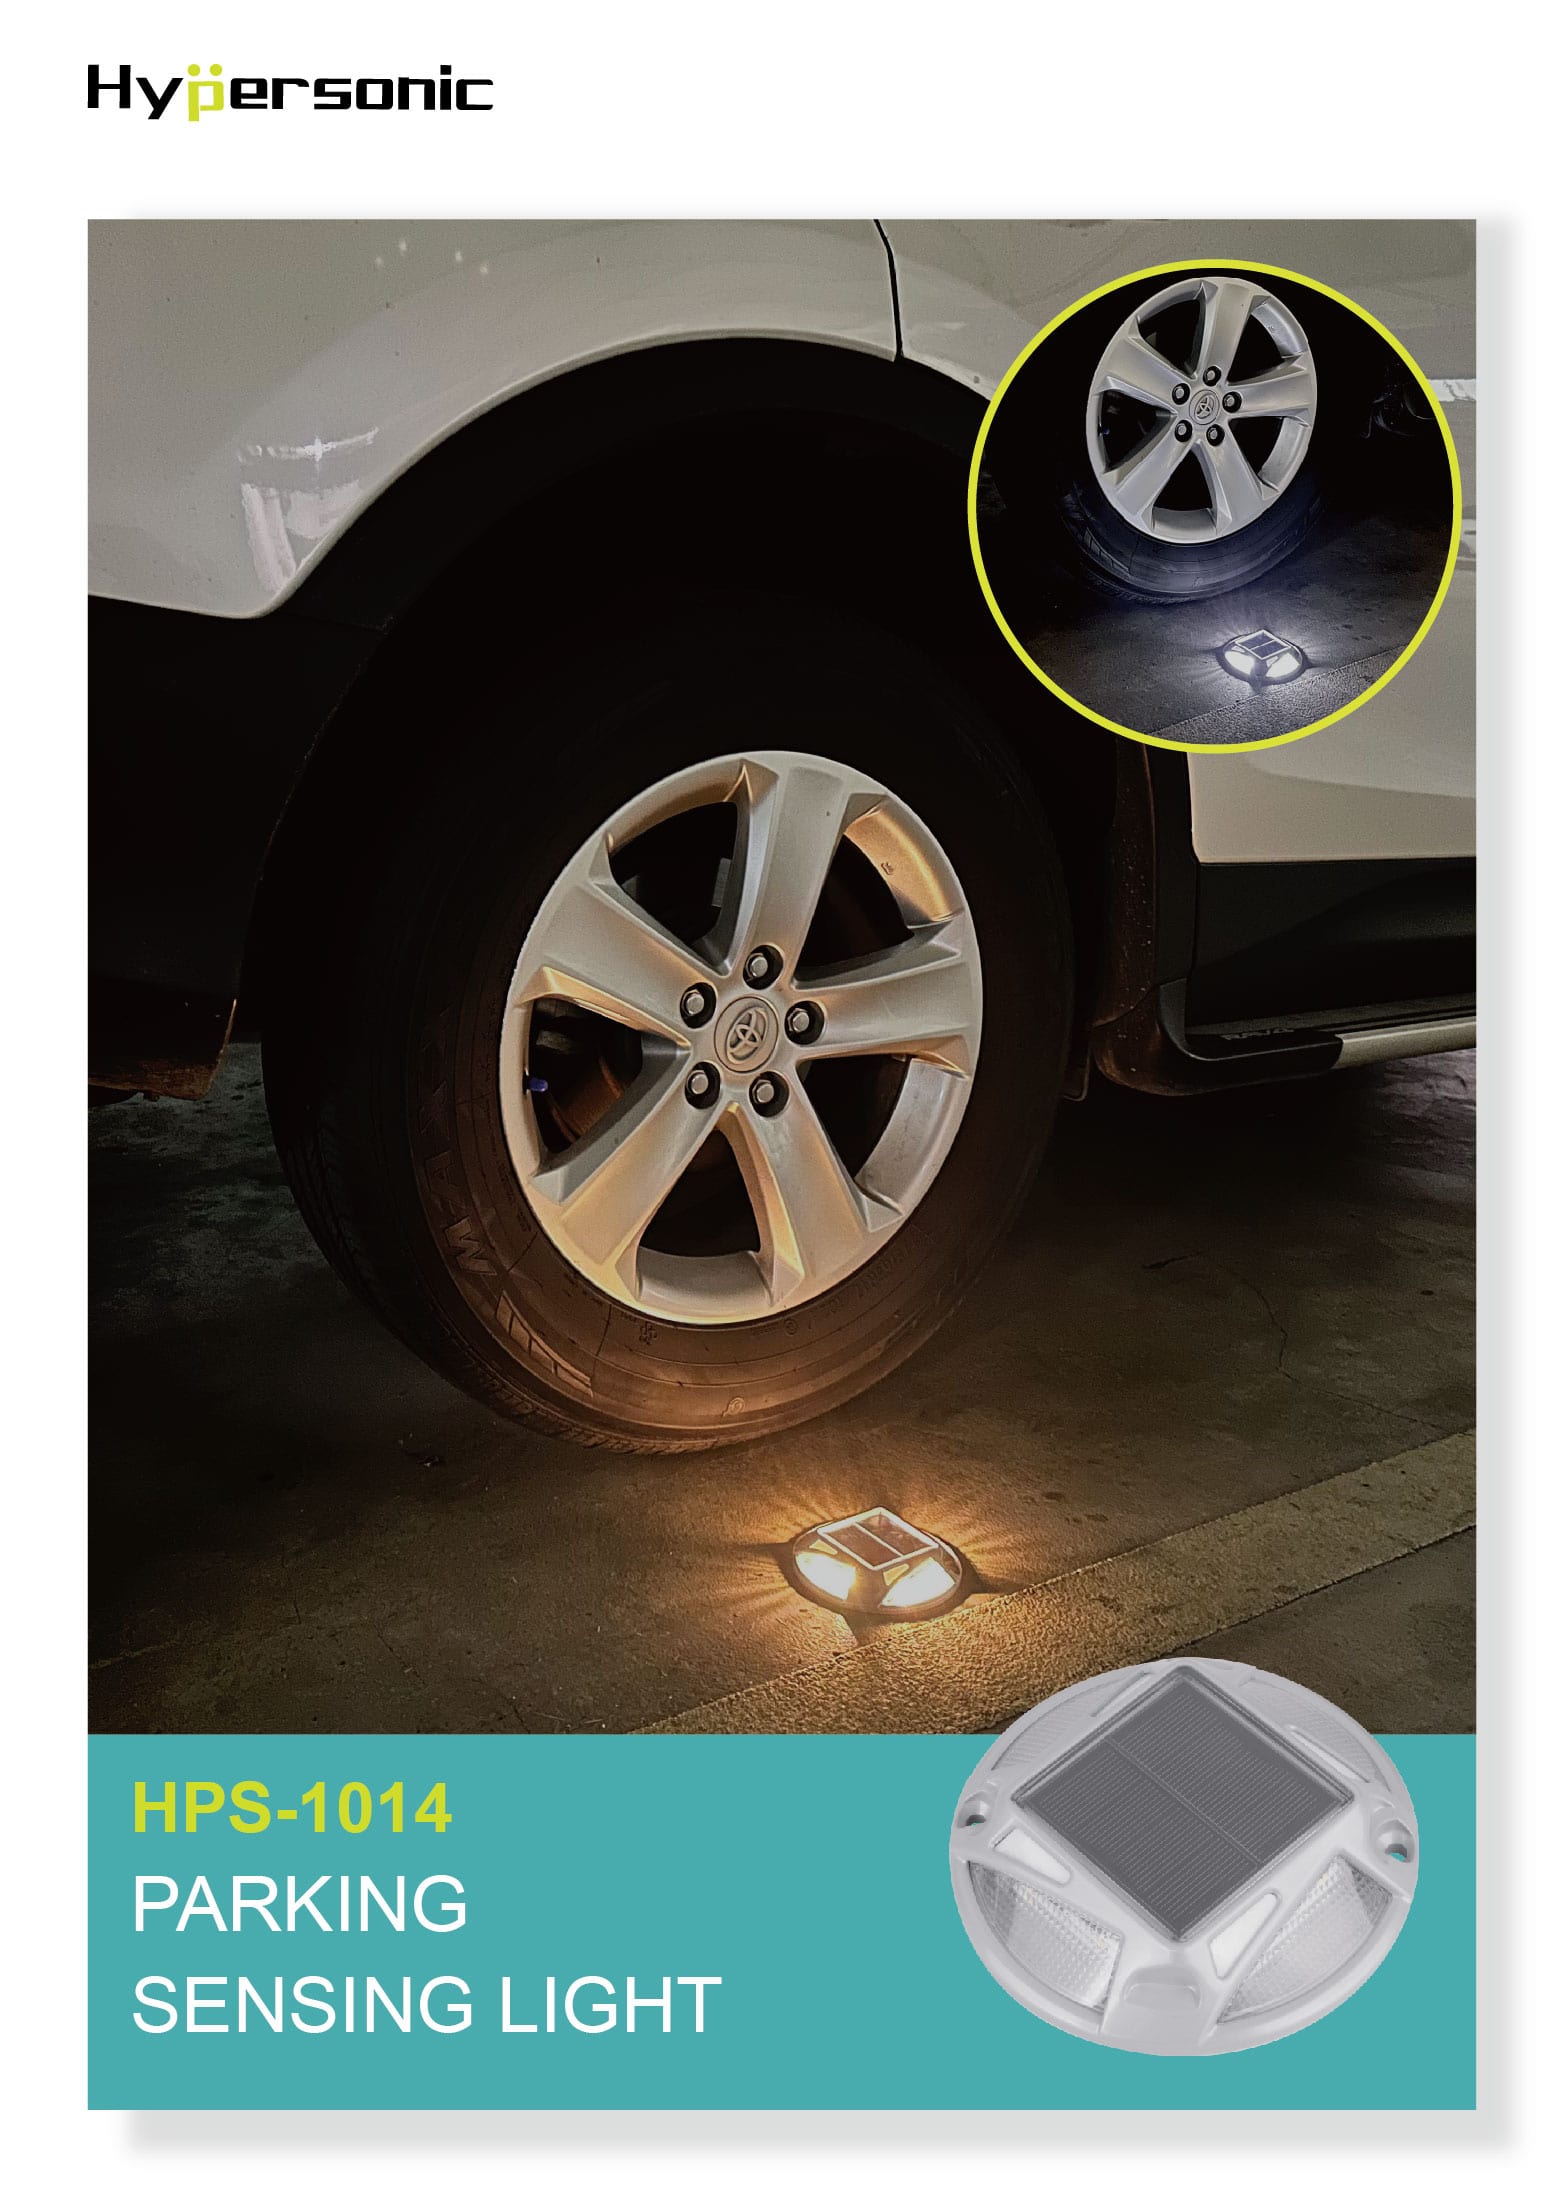 Parking Sensing Light HPS-1014